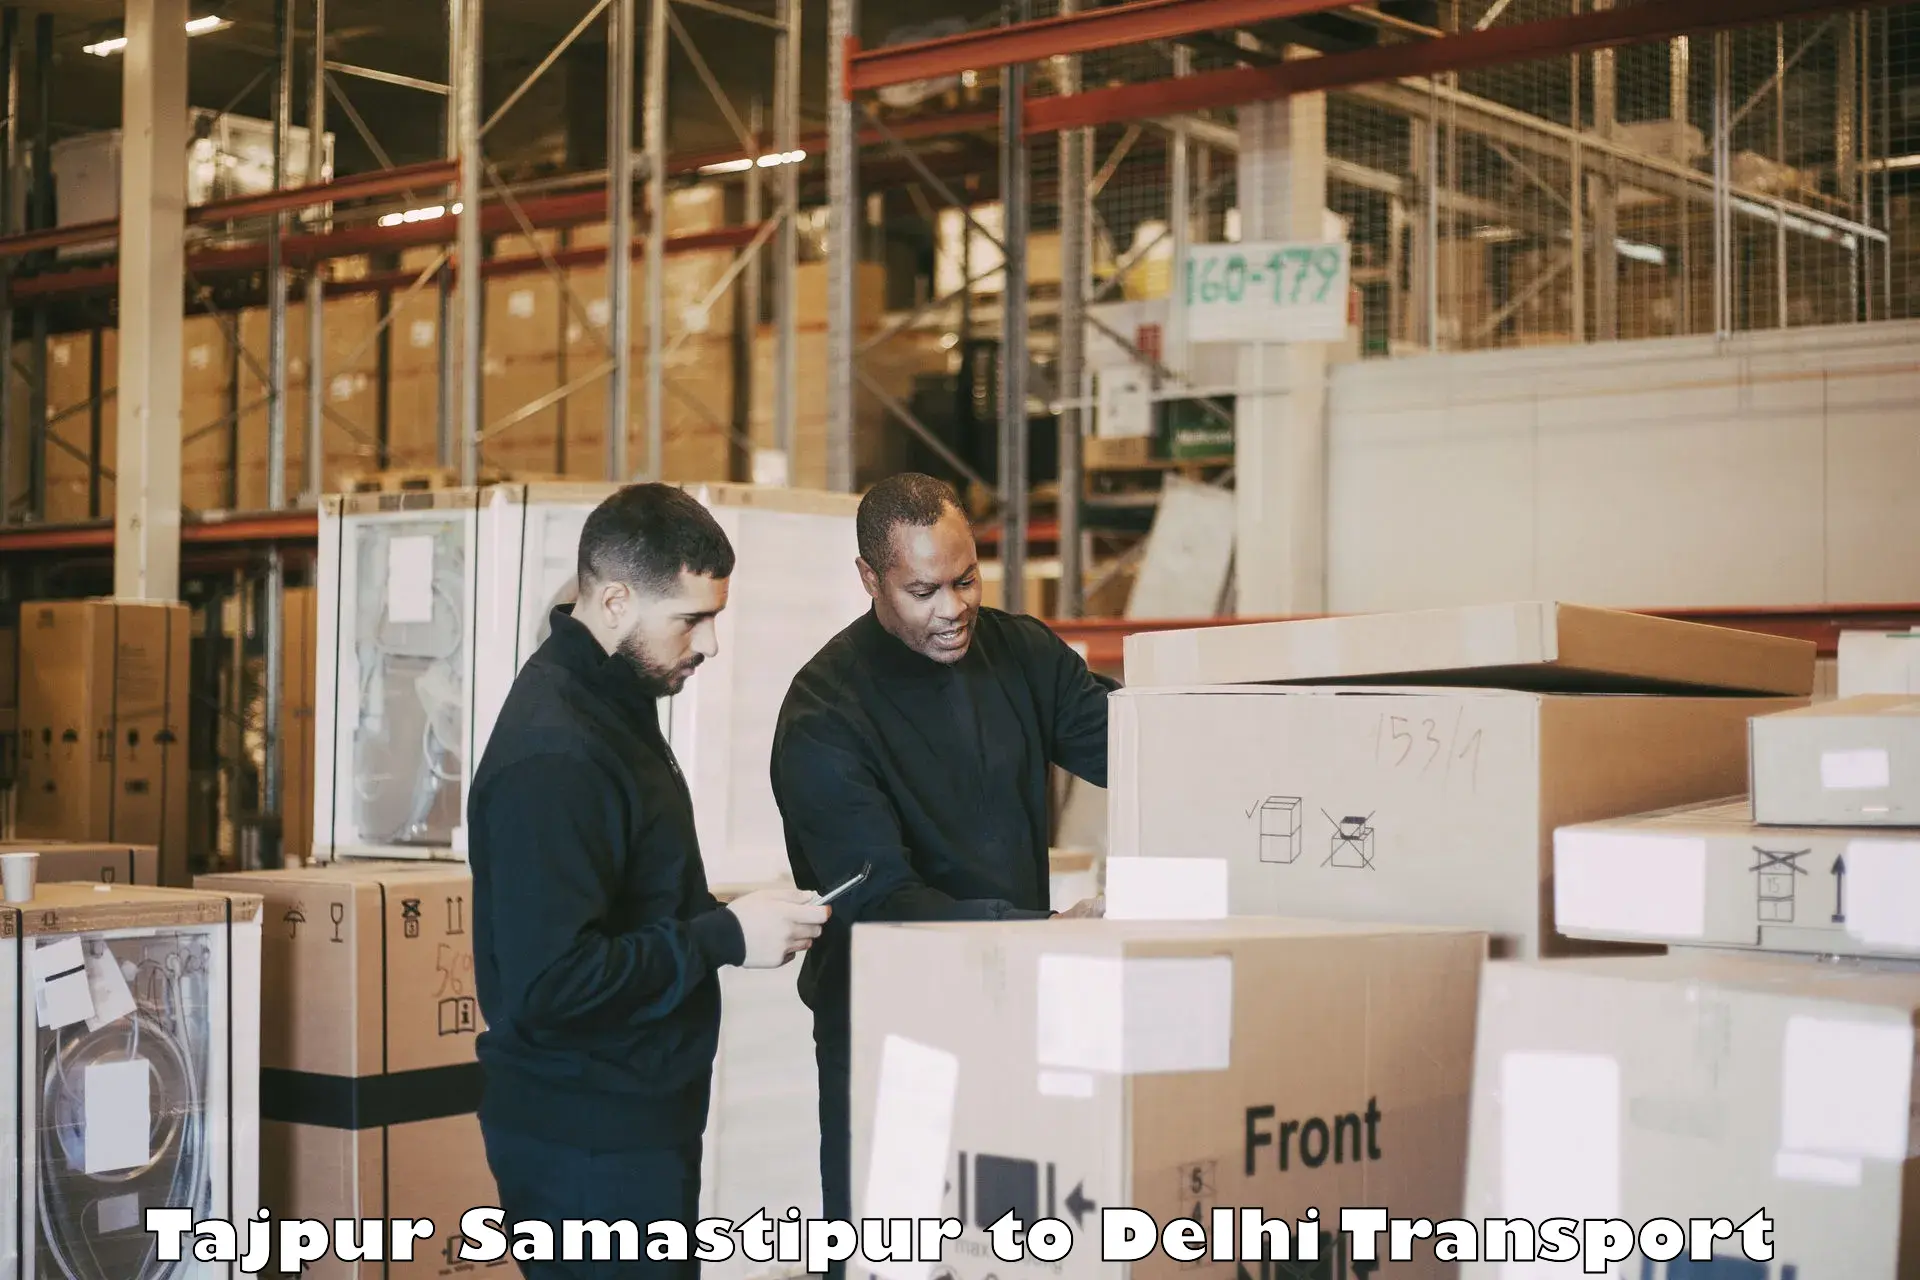 International cargo transportation services Tajpur Samastipur to Delhi